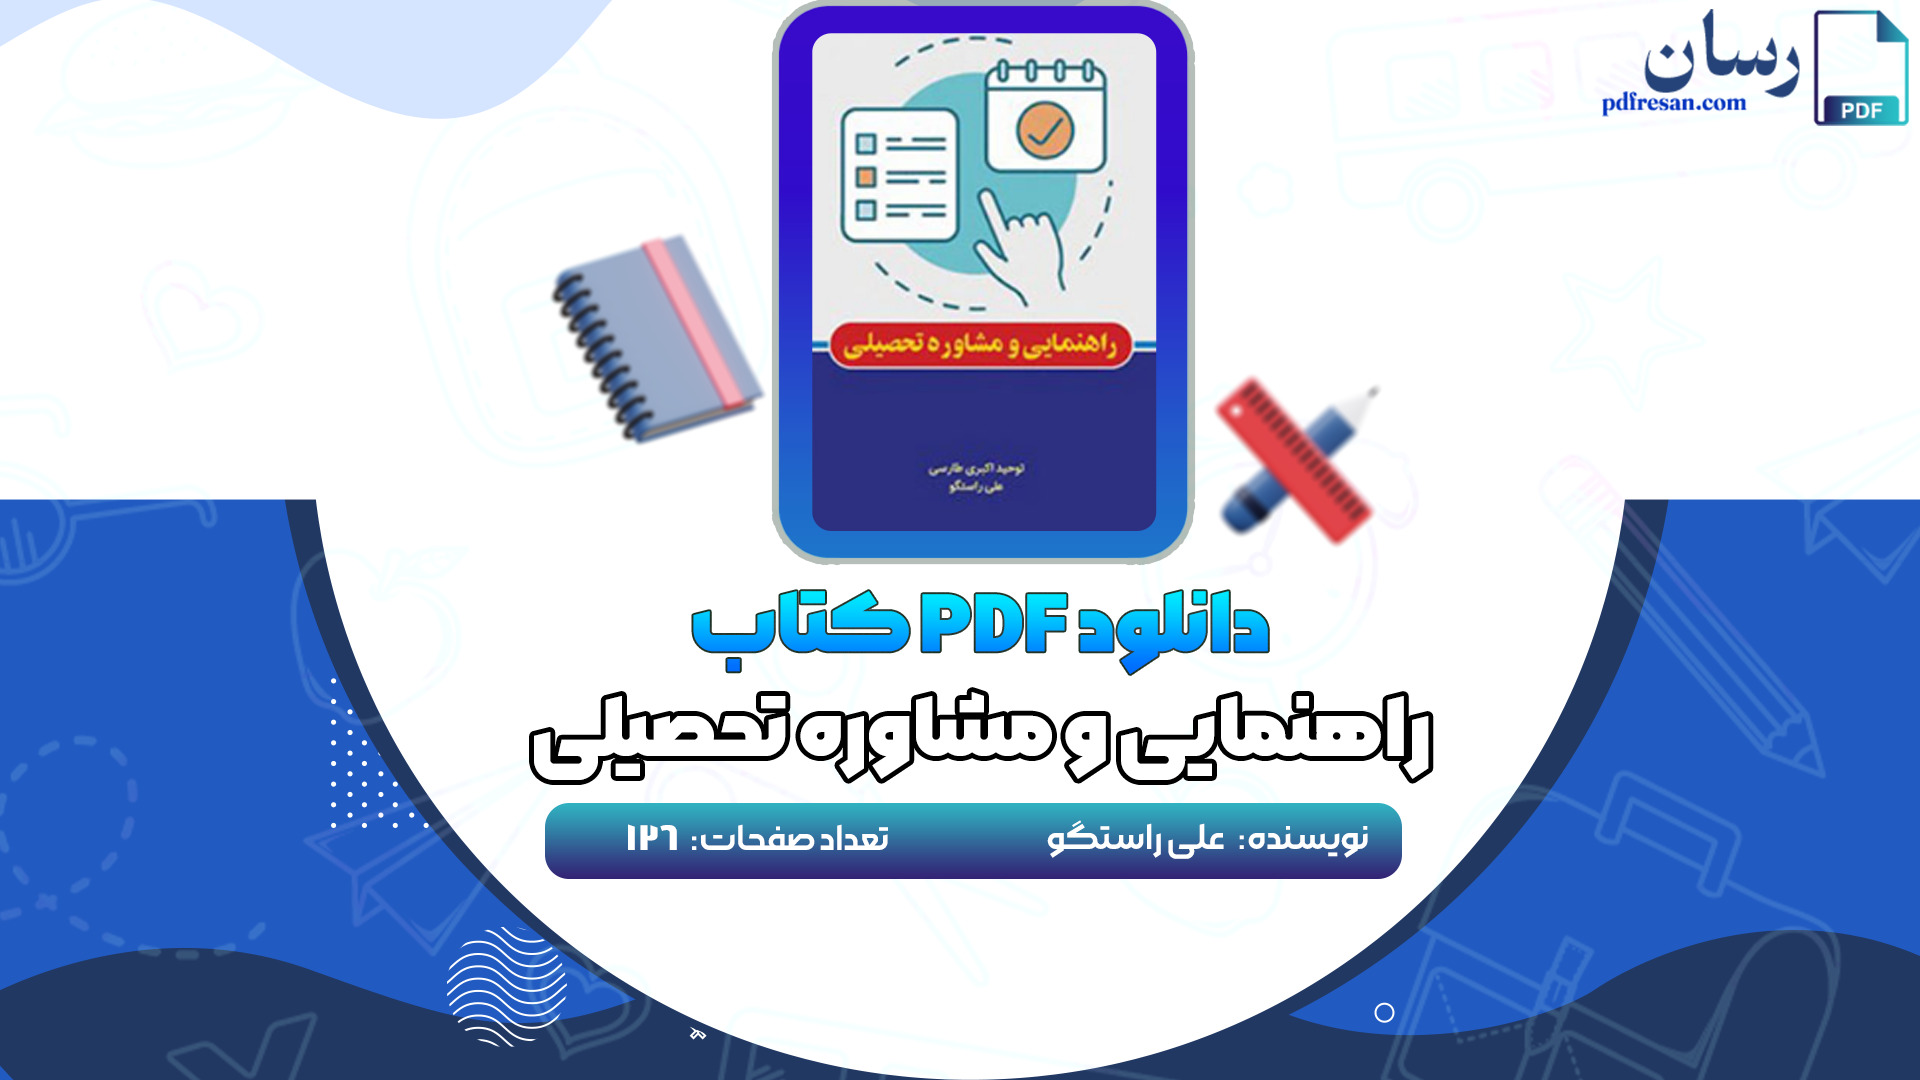 دانلود کتاب راهنمایی و مشاوره تحصیلی علی راستگو PDF